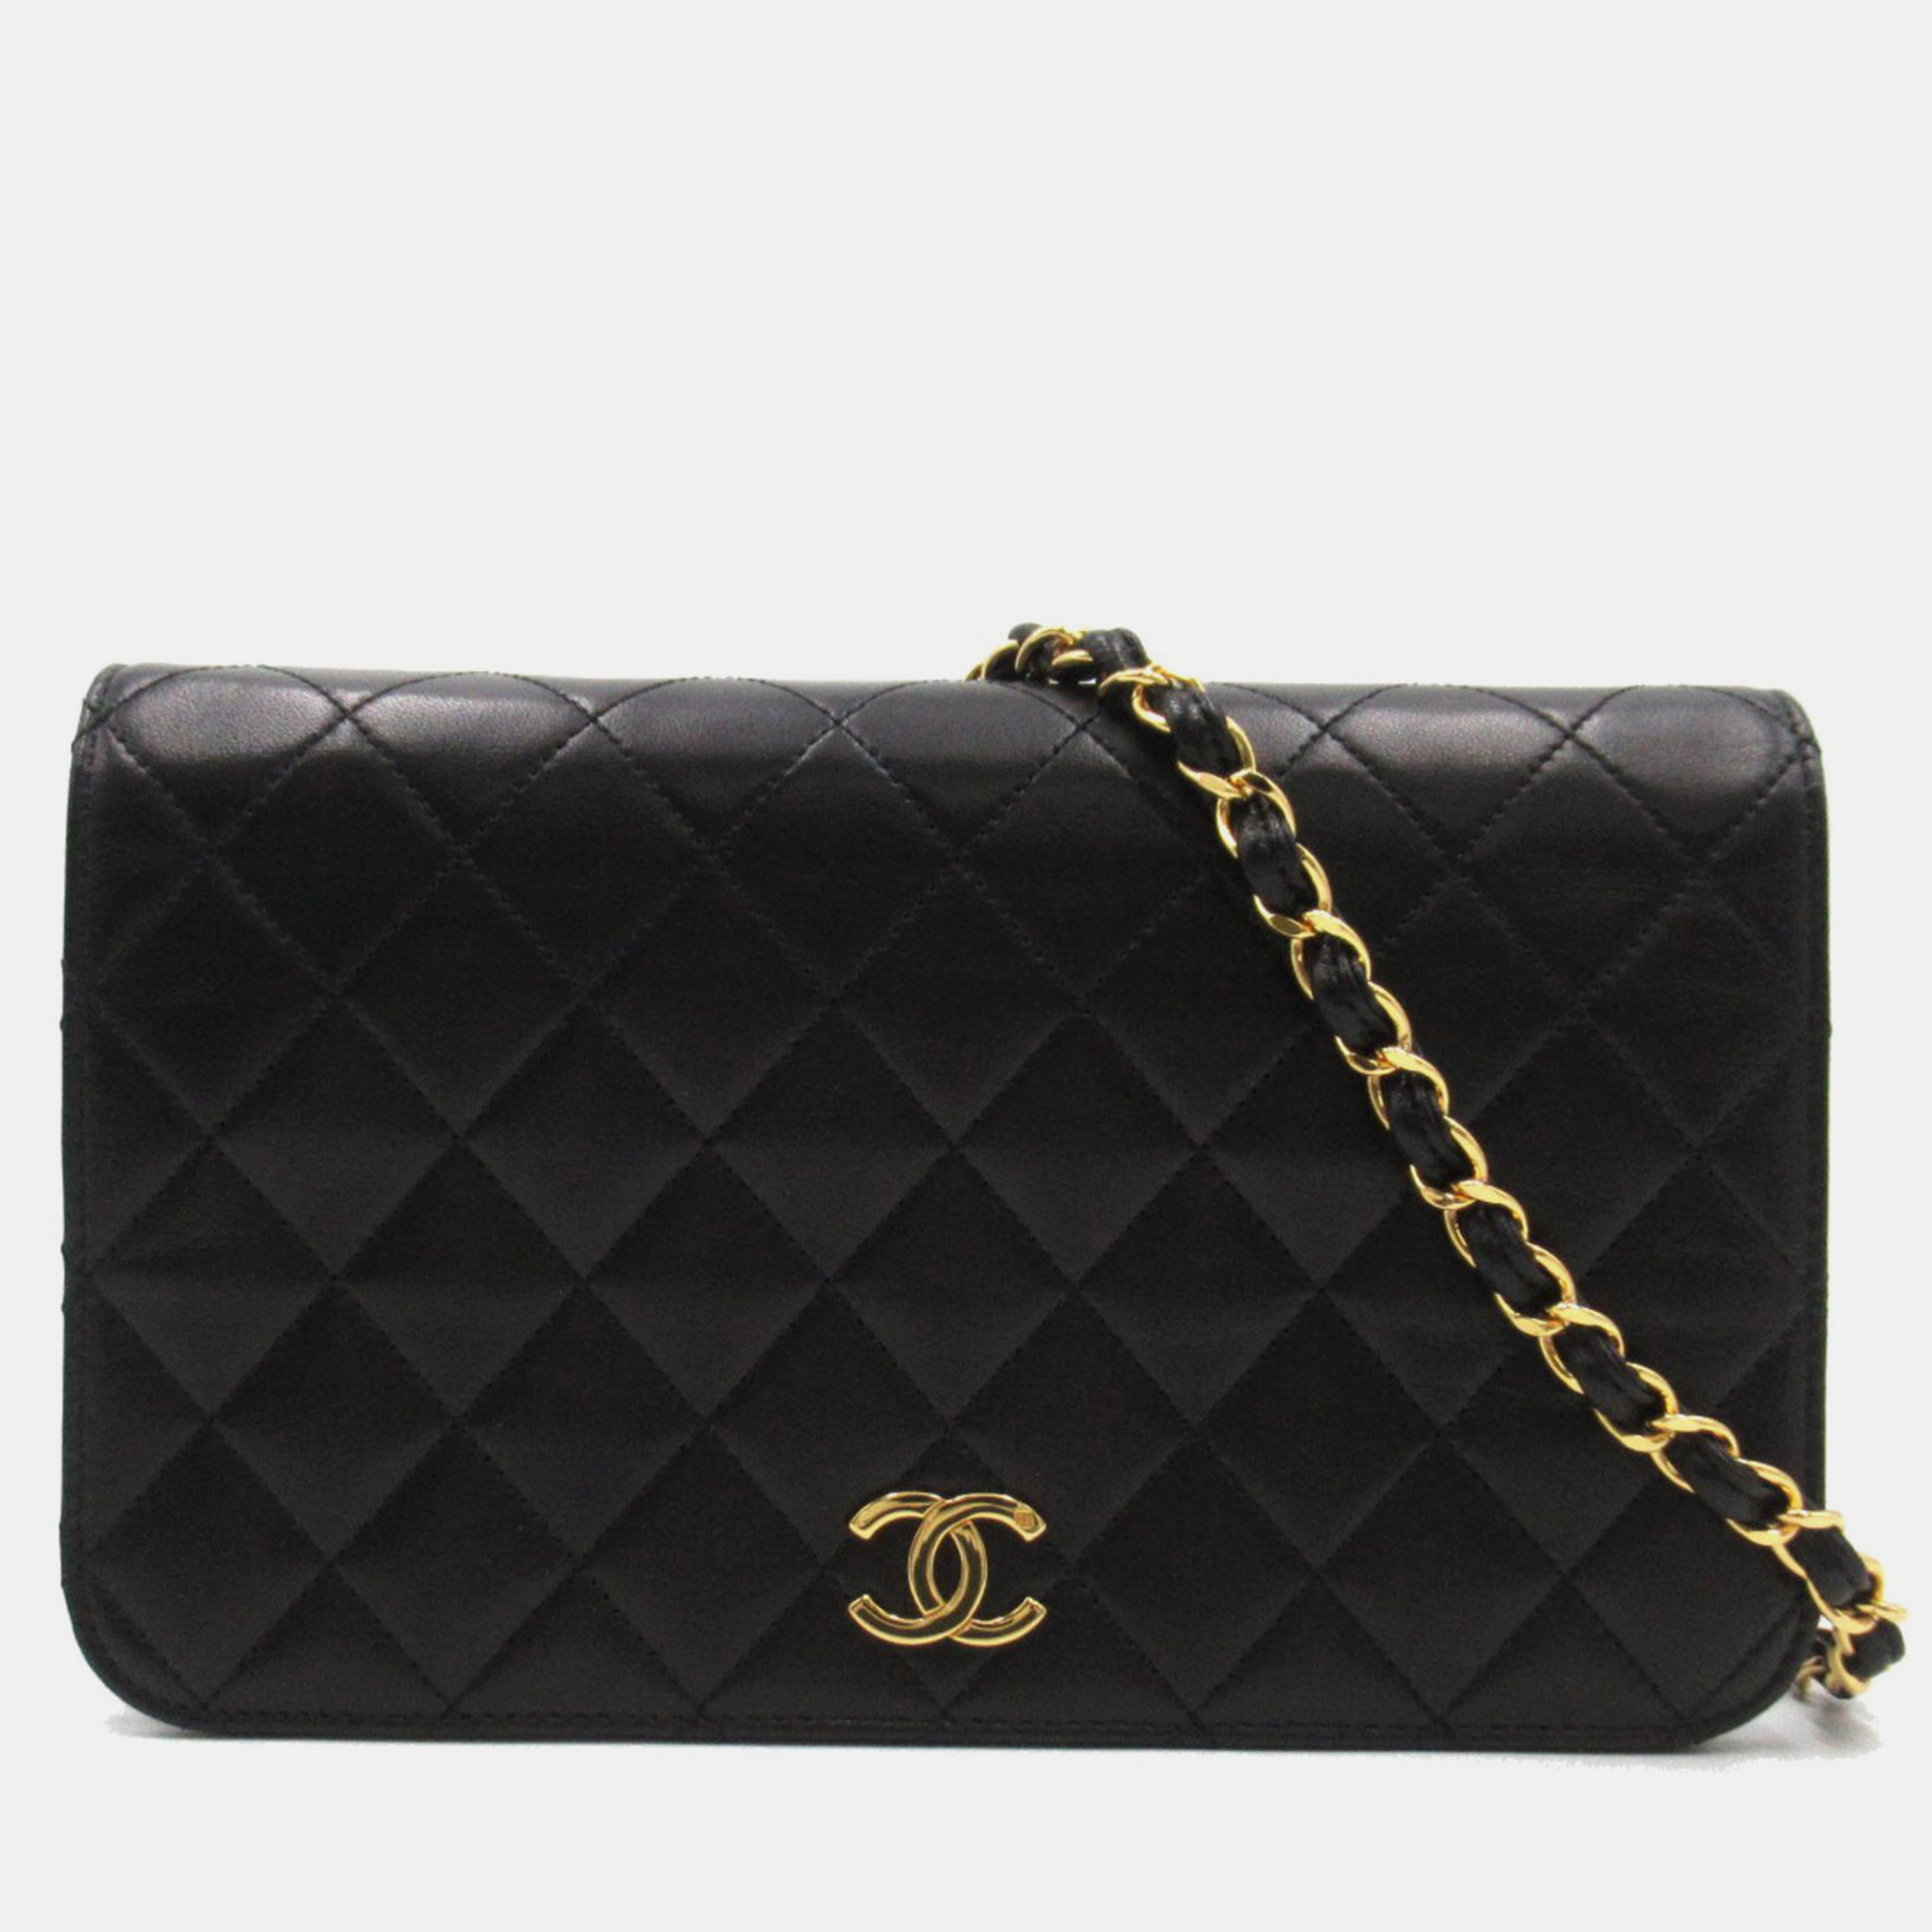 Chanel black calf leather quilted flap bag shoulder bag